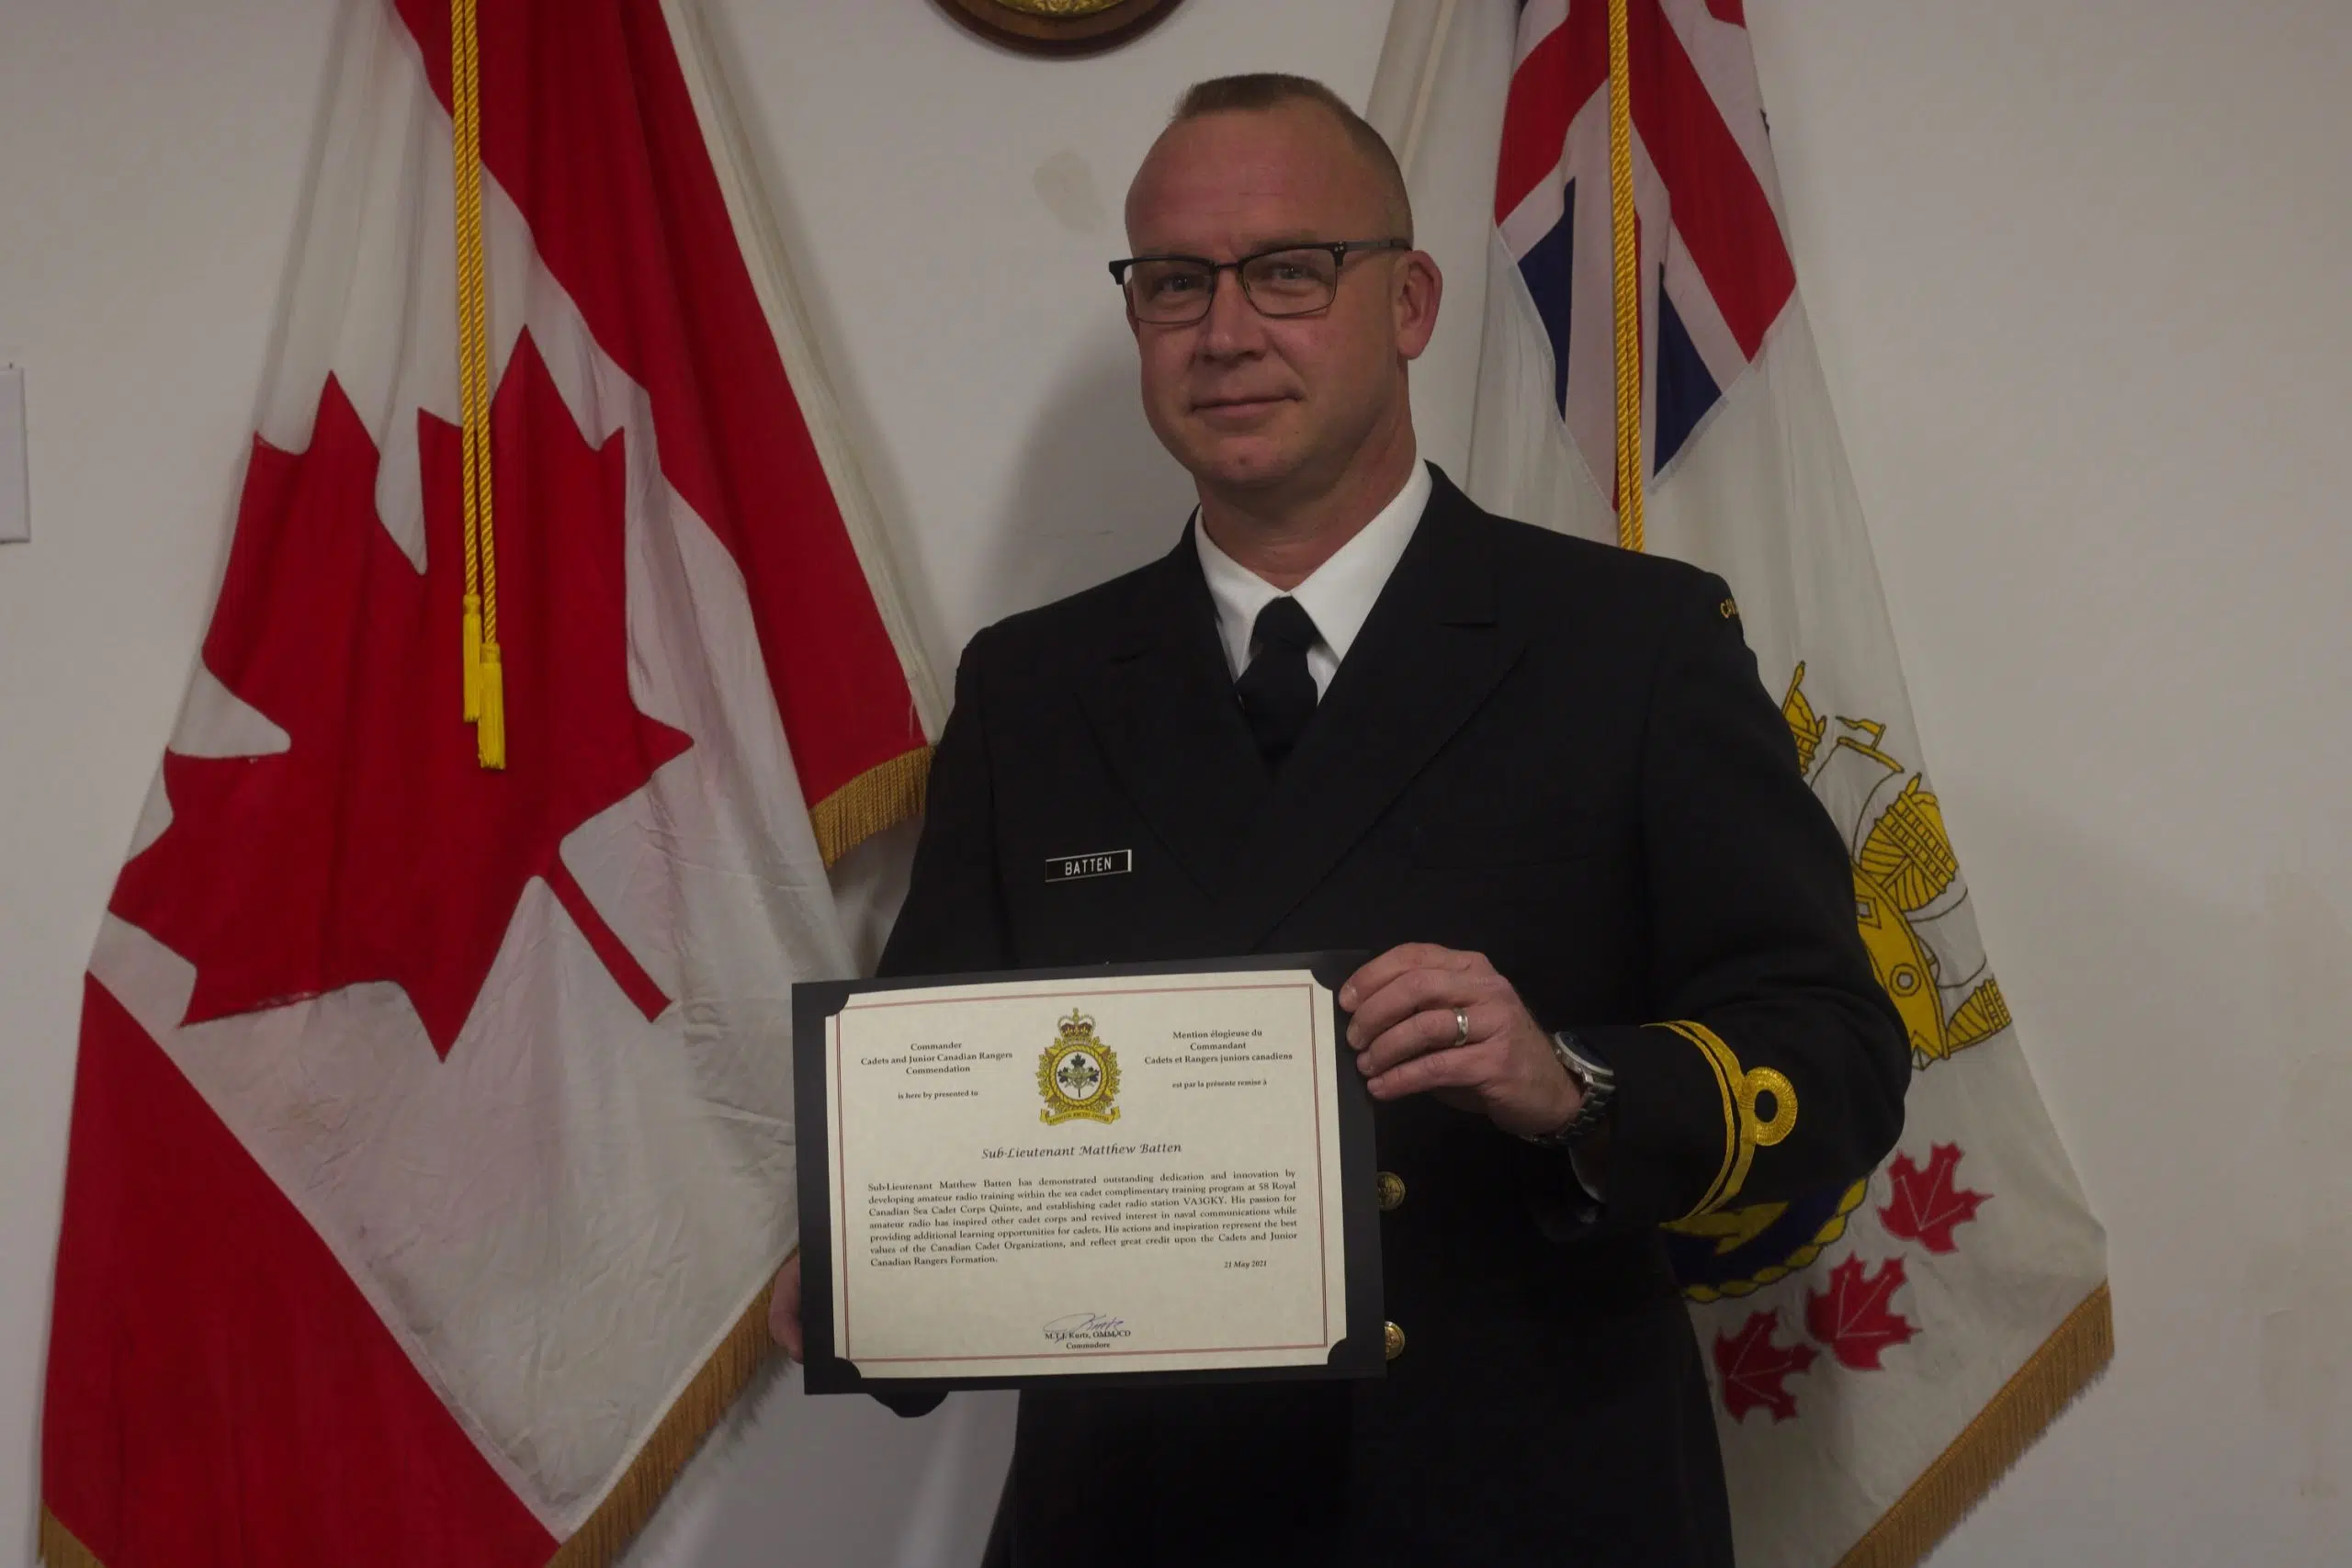 National award for Belleville Sea Cadet officer